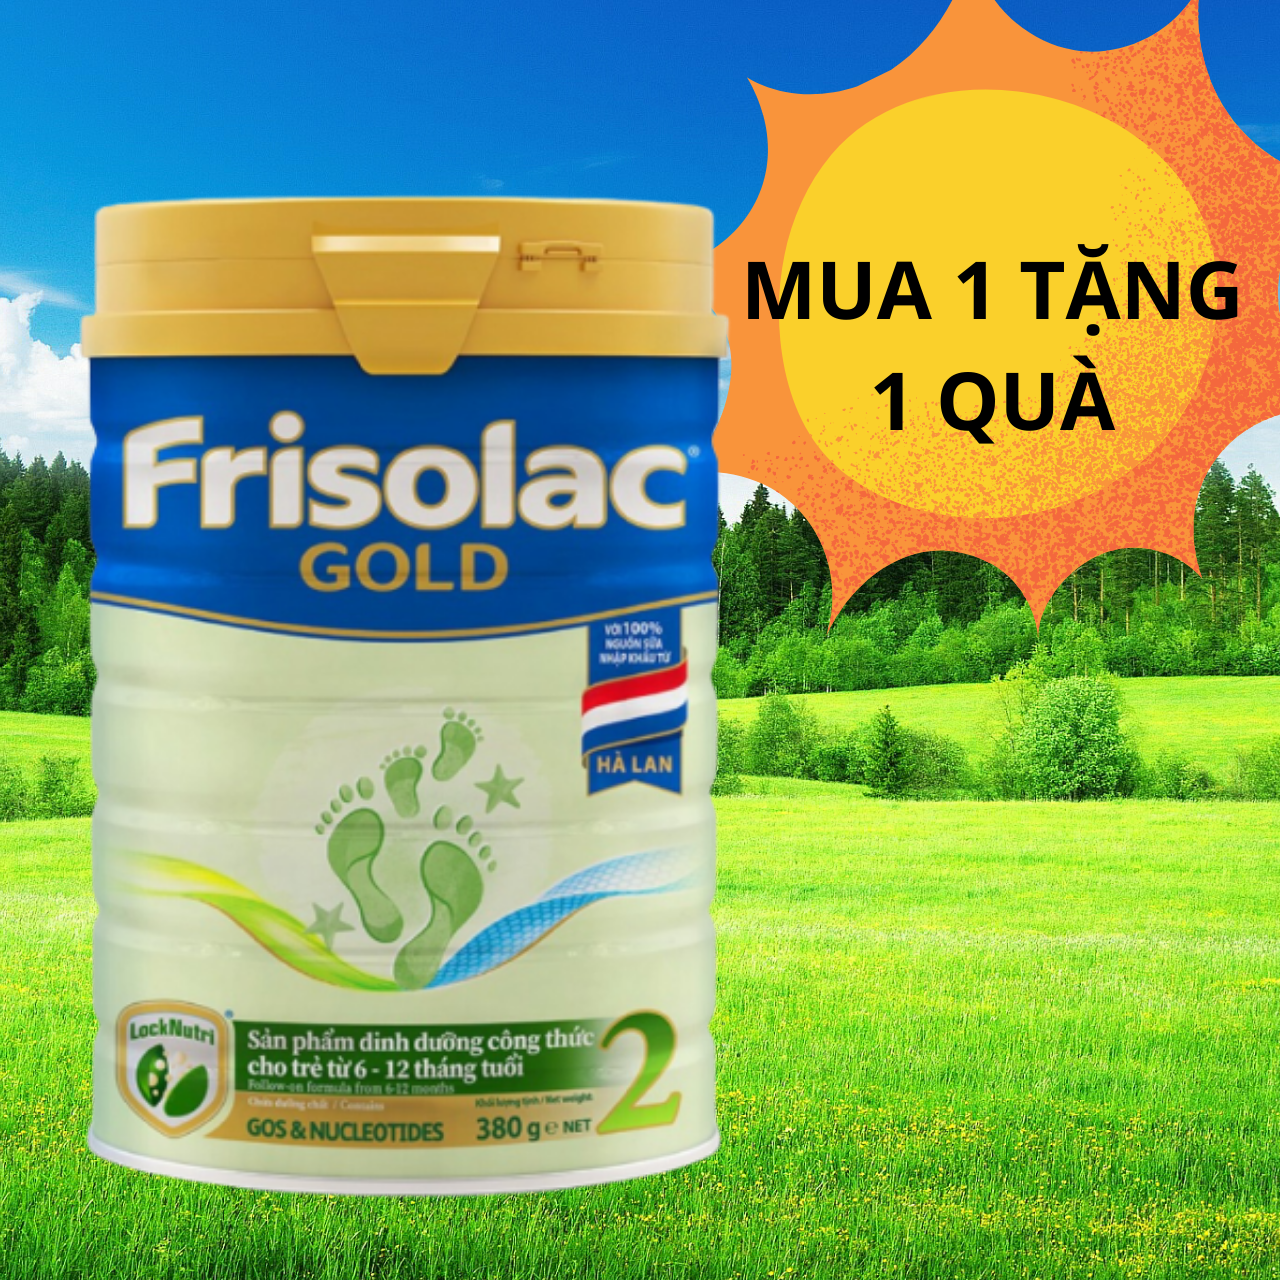 Sữa Frisolac Gold 2 850g Dành cho trẻ 6-12 tháng tuổi. Kèm quà tặng hấp dẫn